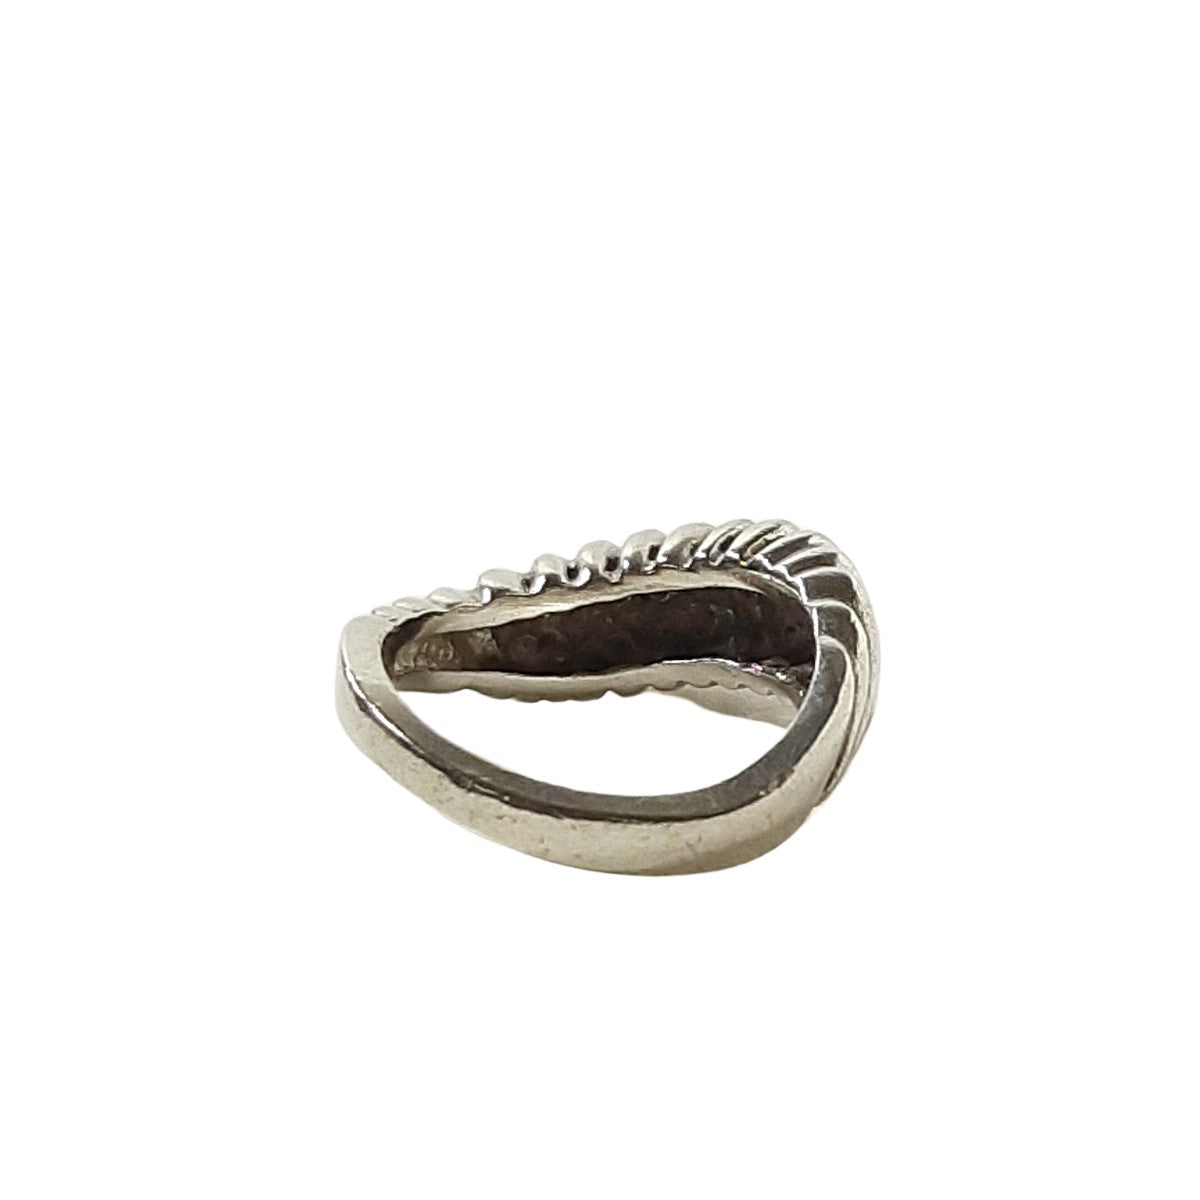 ヴィンテージ シルバー925 リング 13号5.5g / Vintage Sterling Silver Ring